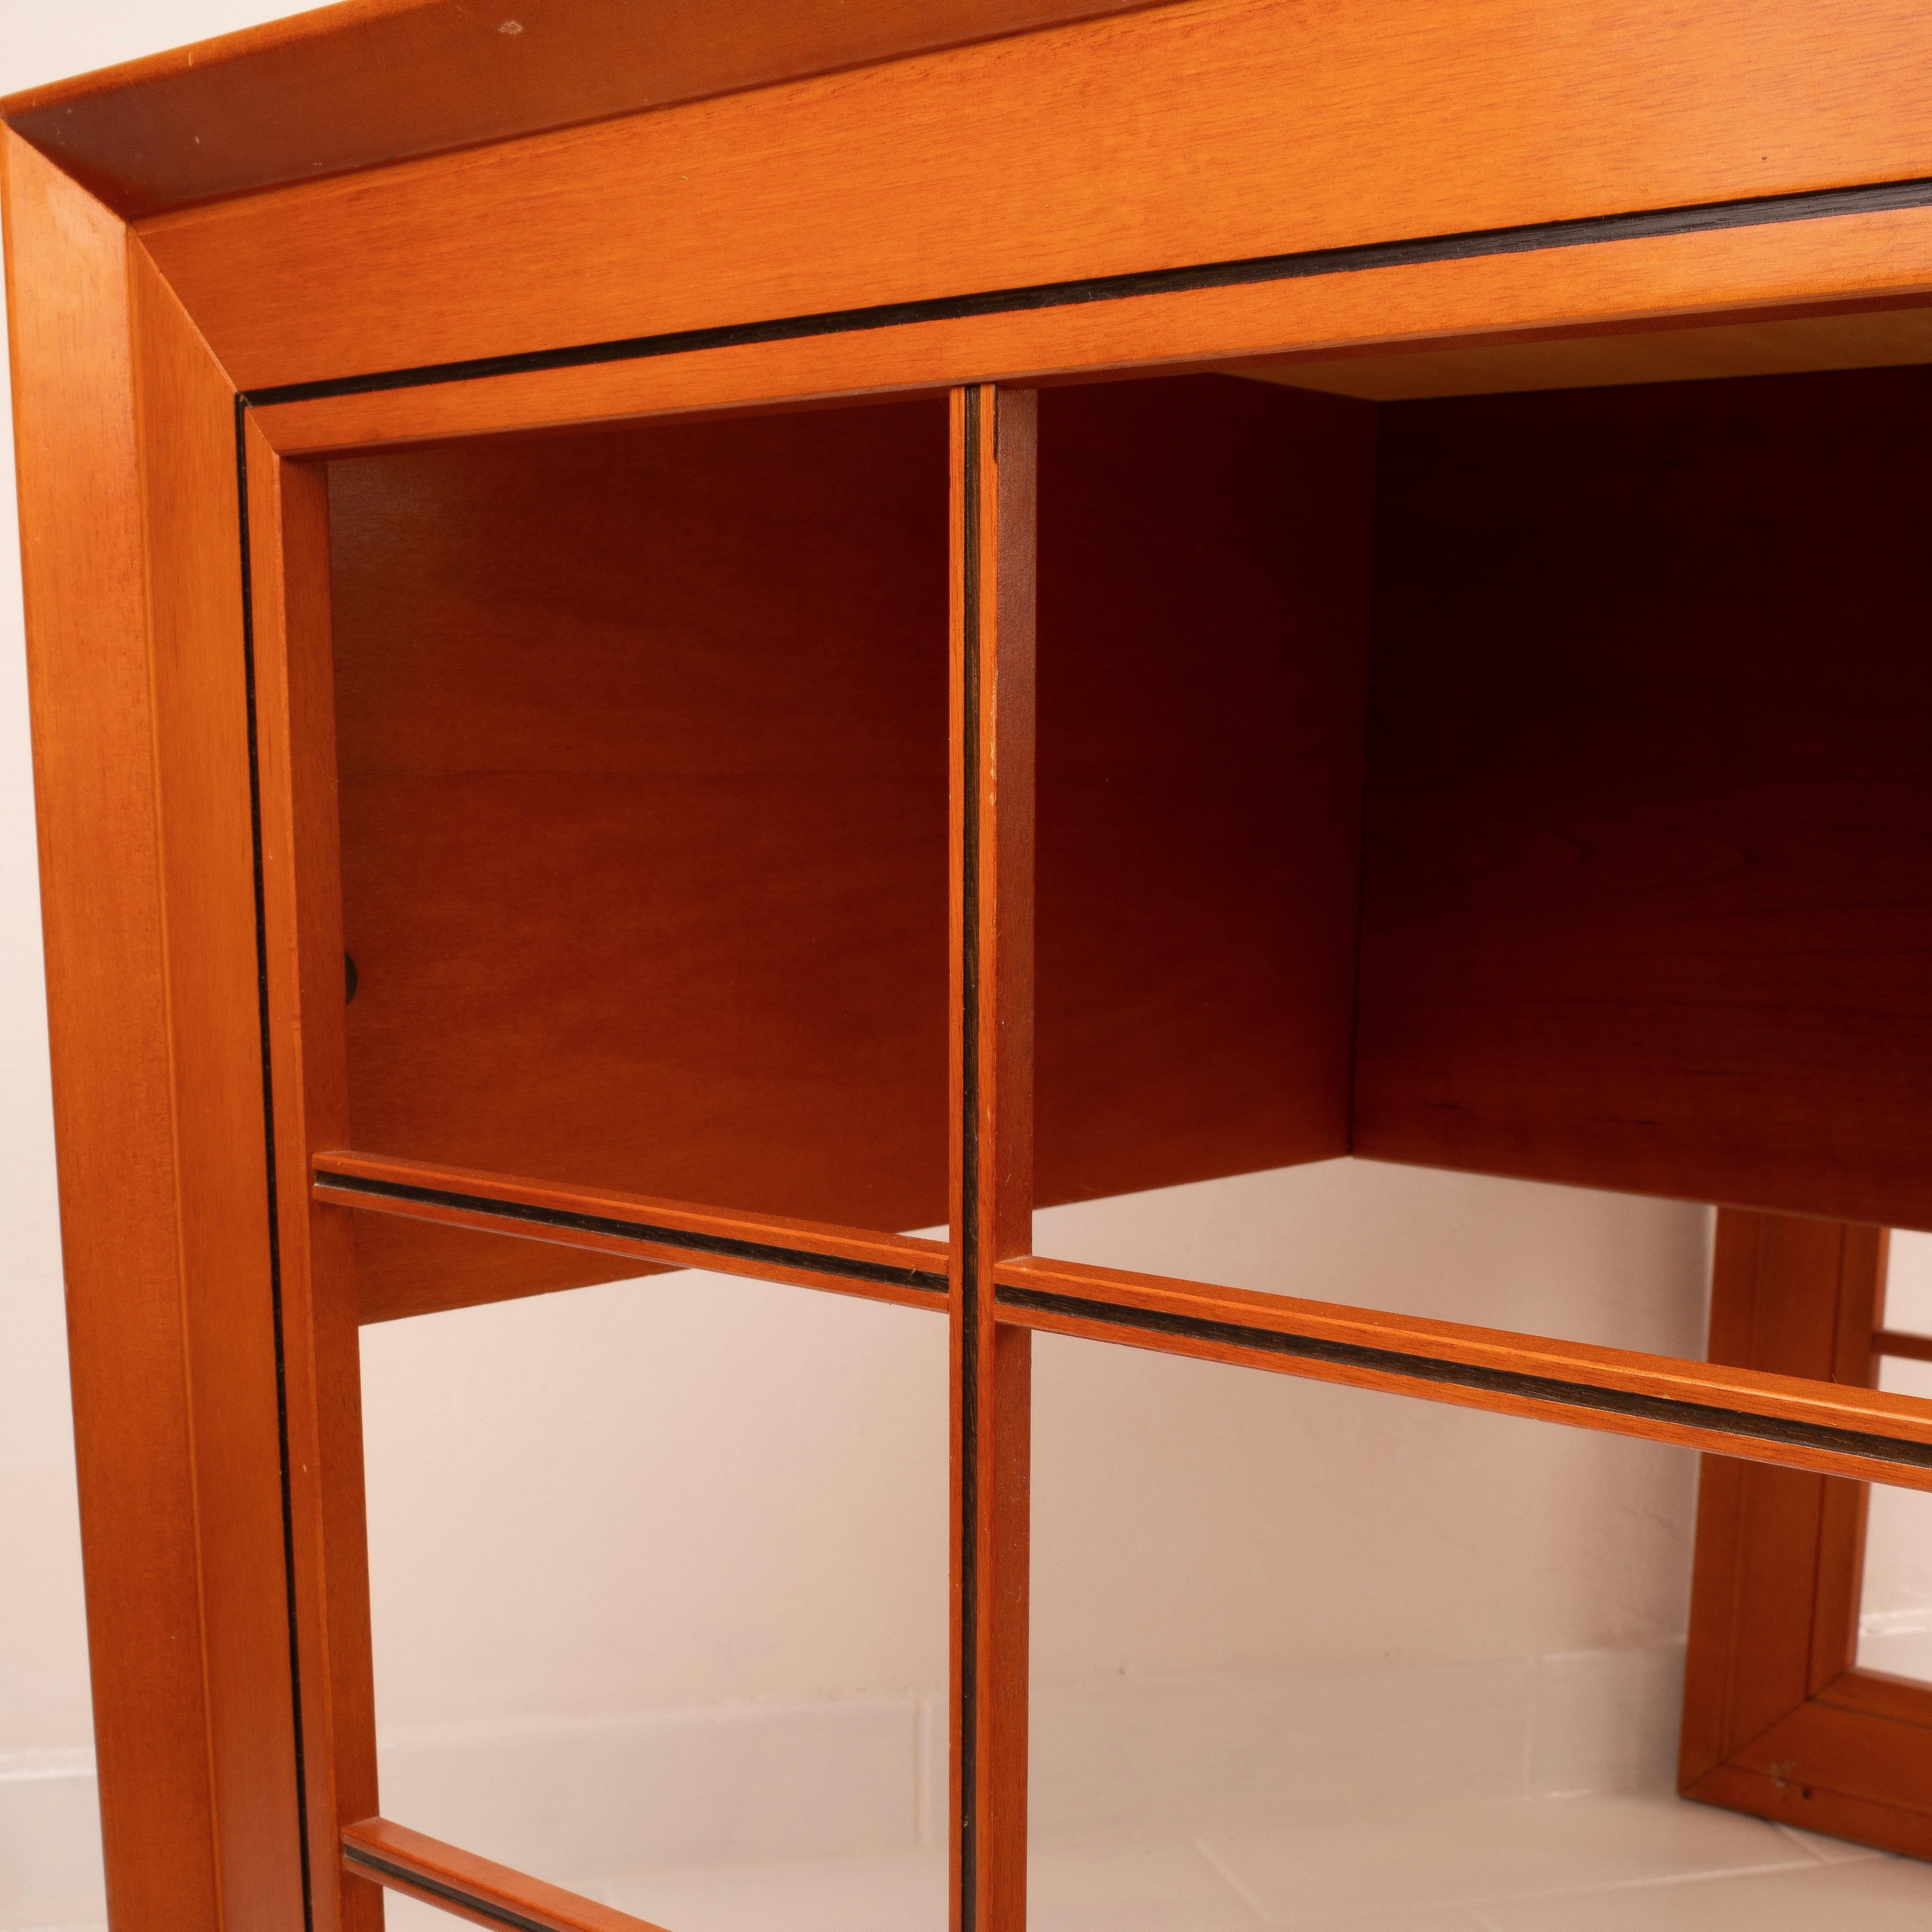 Copper Linea Mobili desk model 